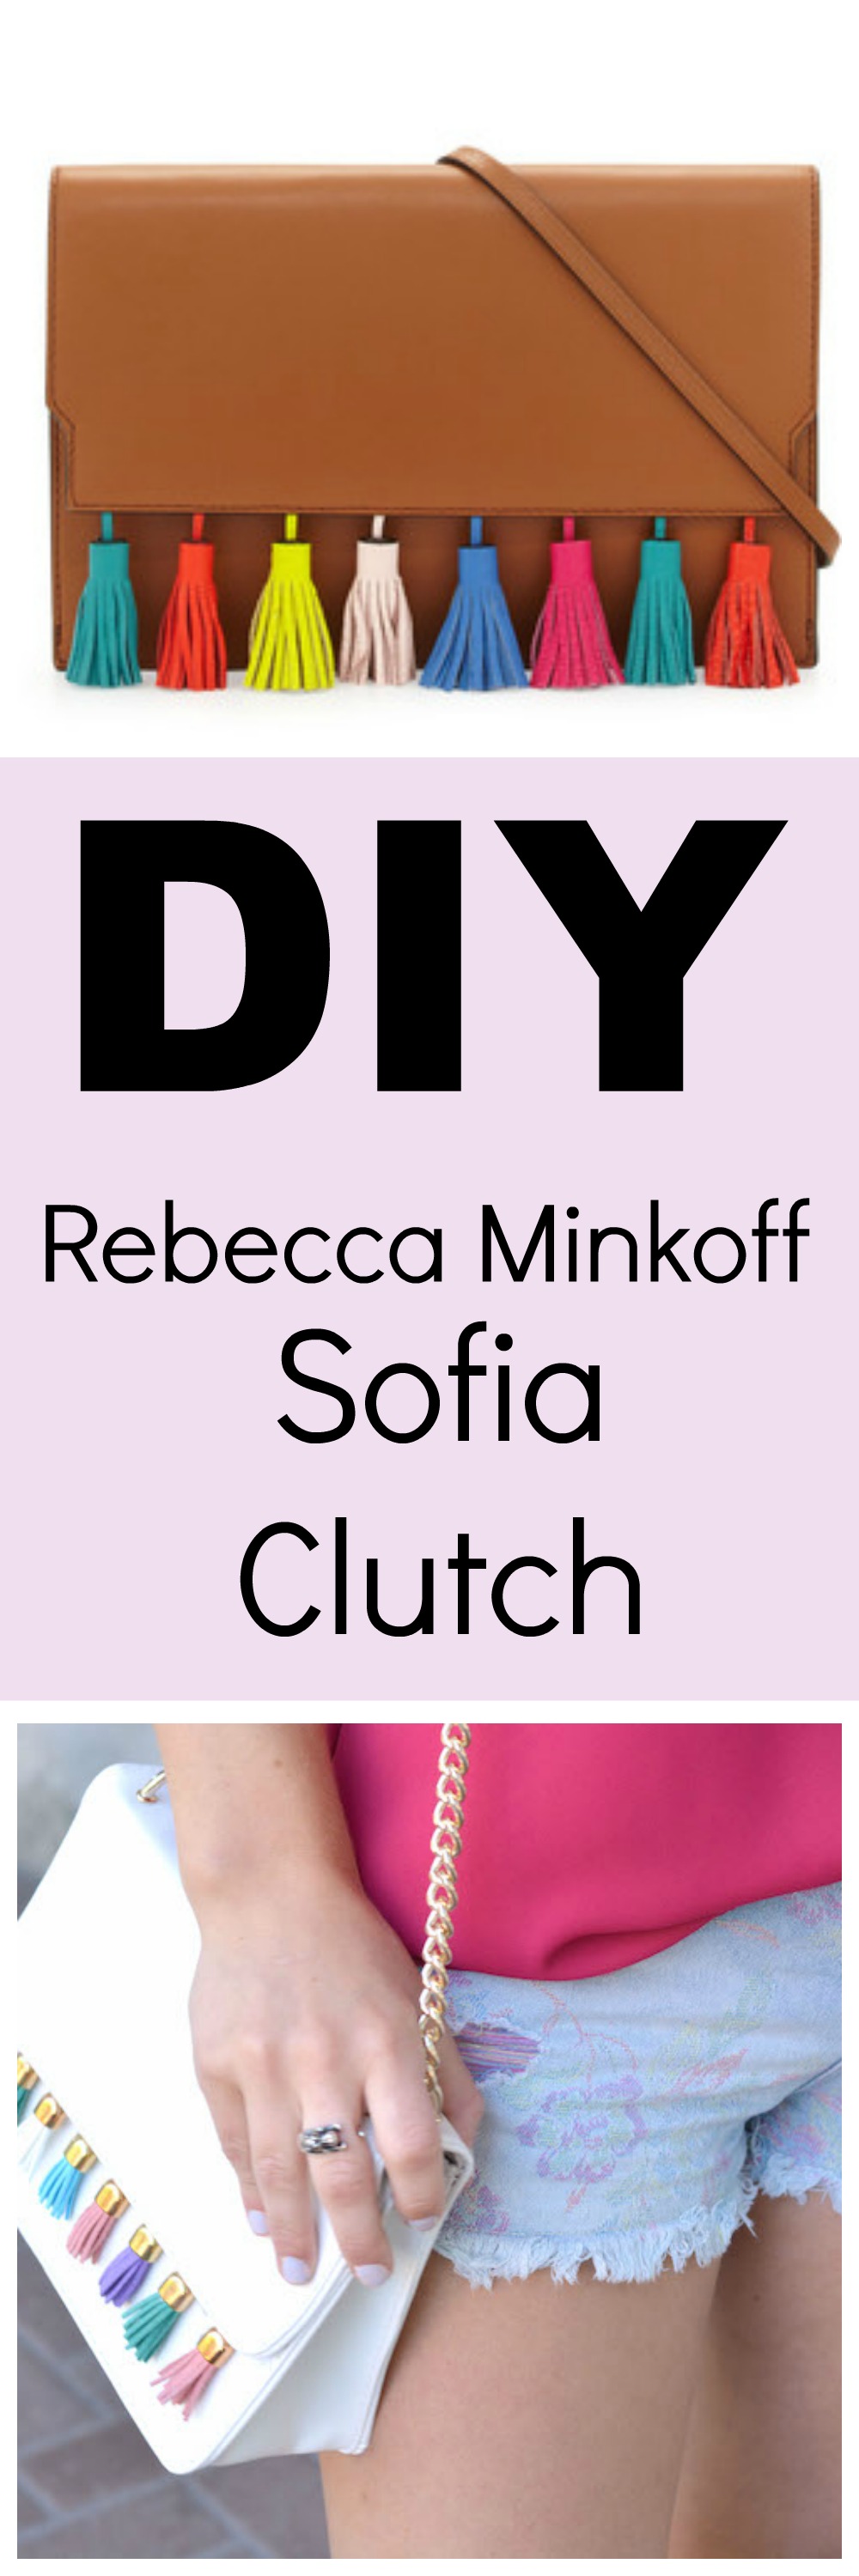 Rebecca Minkoff Sofia Clutch DIY